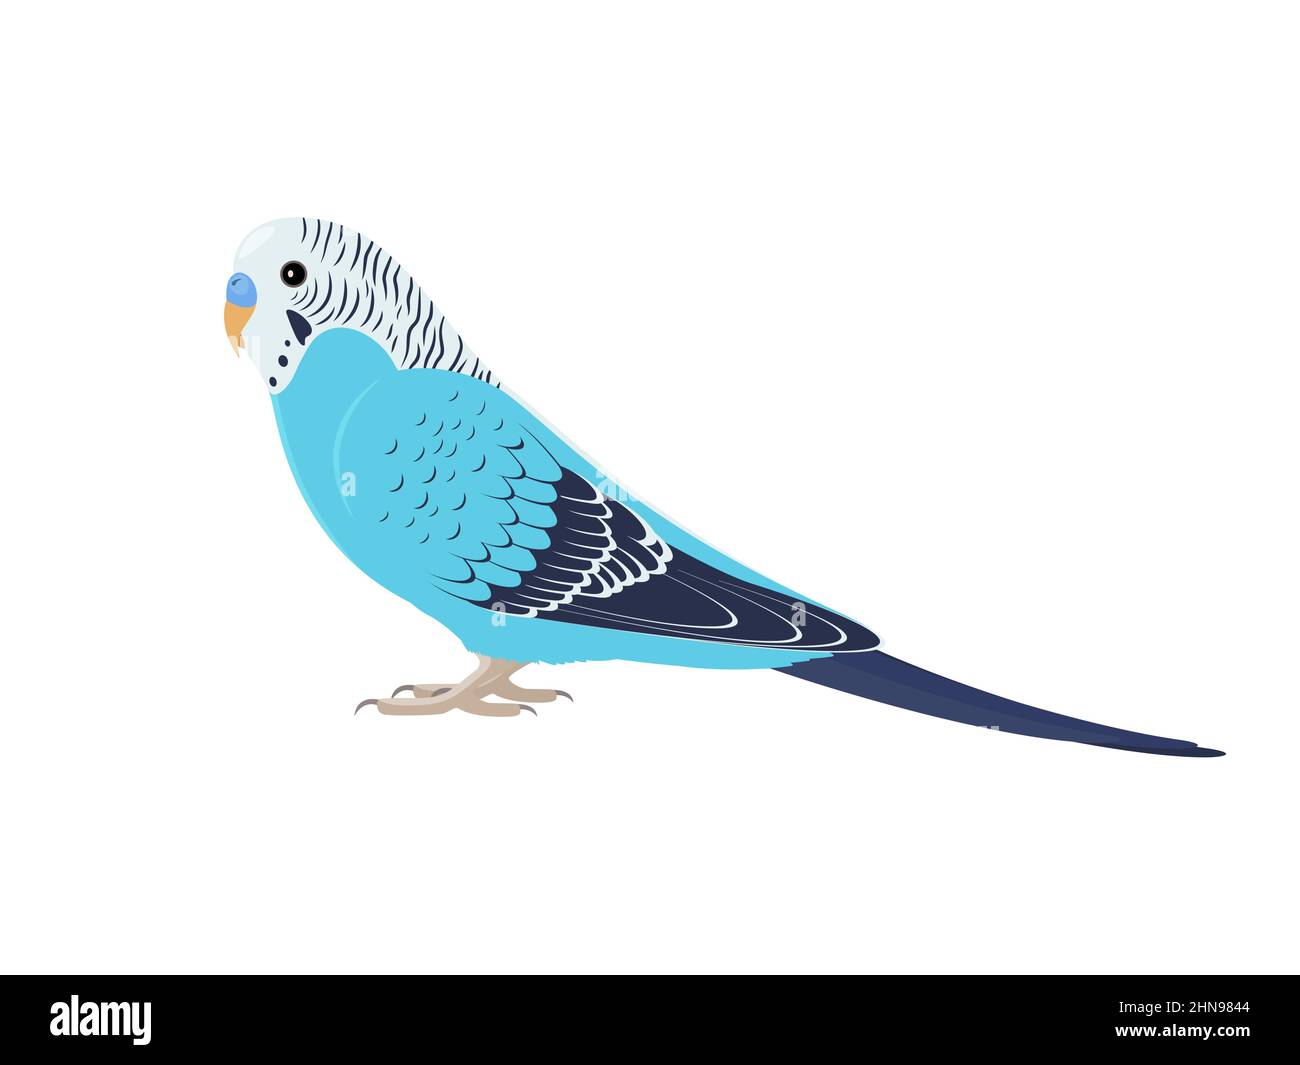 Wellensittich, der seitlich steht. Vektor-Illustration eines Haustier Wellensittich blau Papagei auf weißem Hintergrund. Stock Vektor